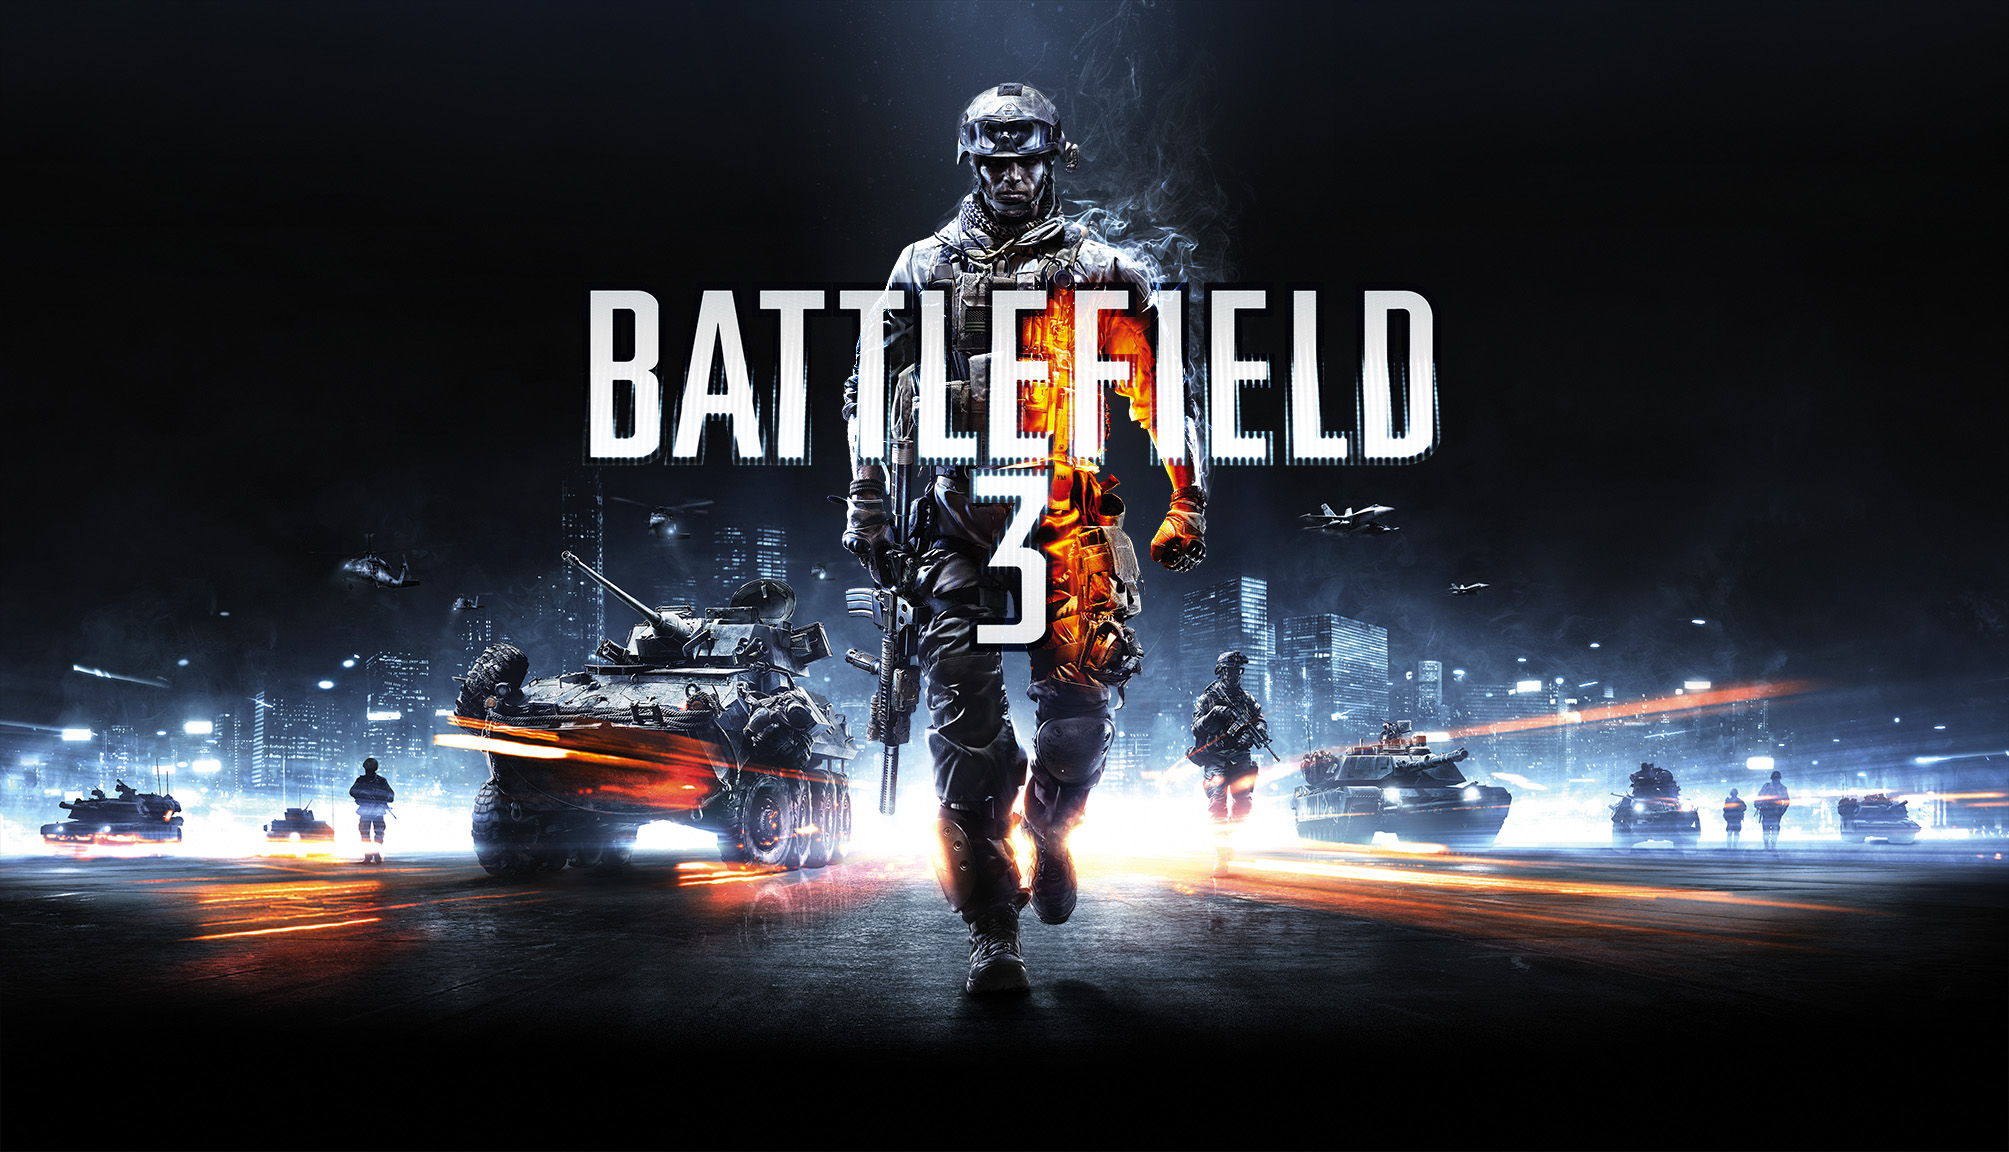 Battlefield 1 Battlefield Hardline Battlefield 4 Battlefield 3